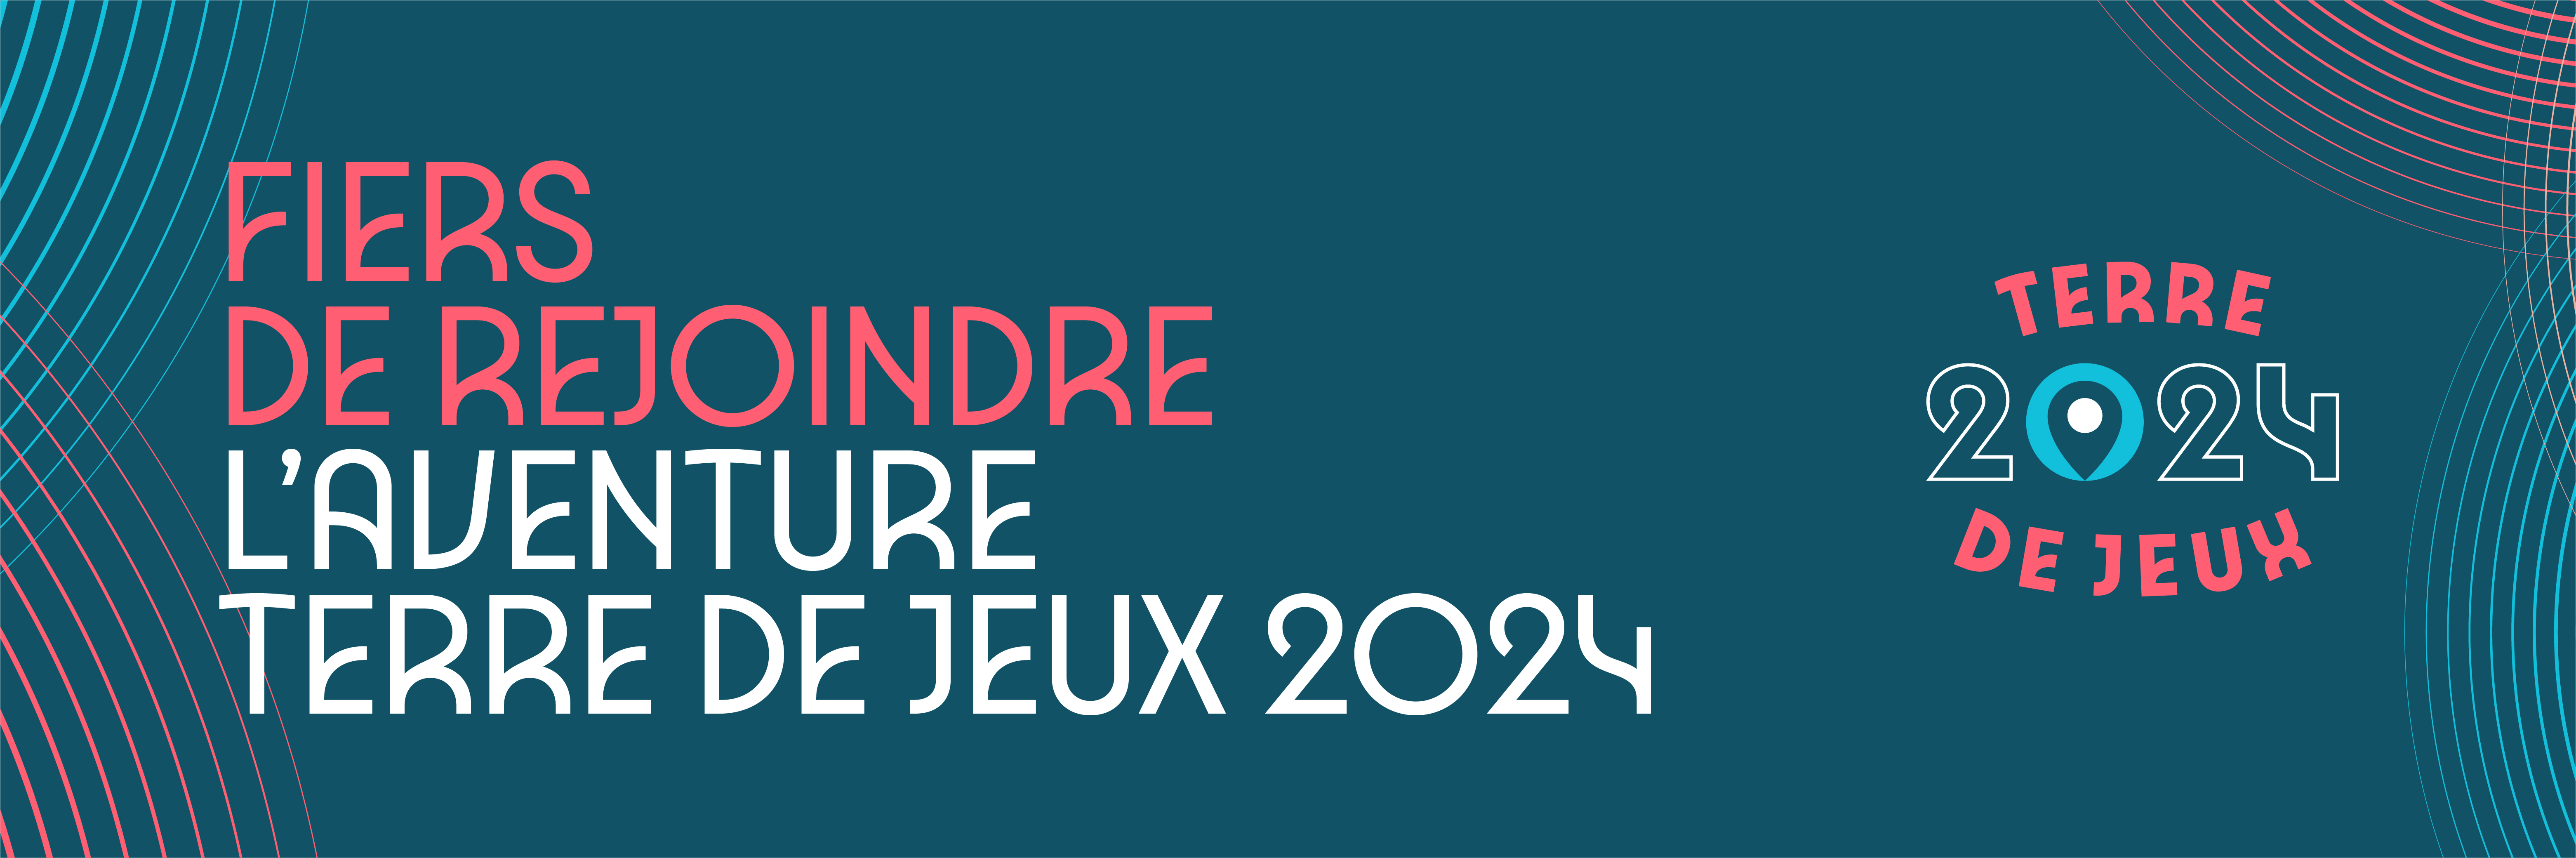 Terre de Jeux 2024 - Bandeau Fond bleu.jpg